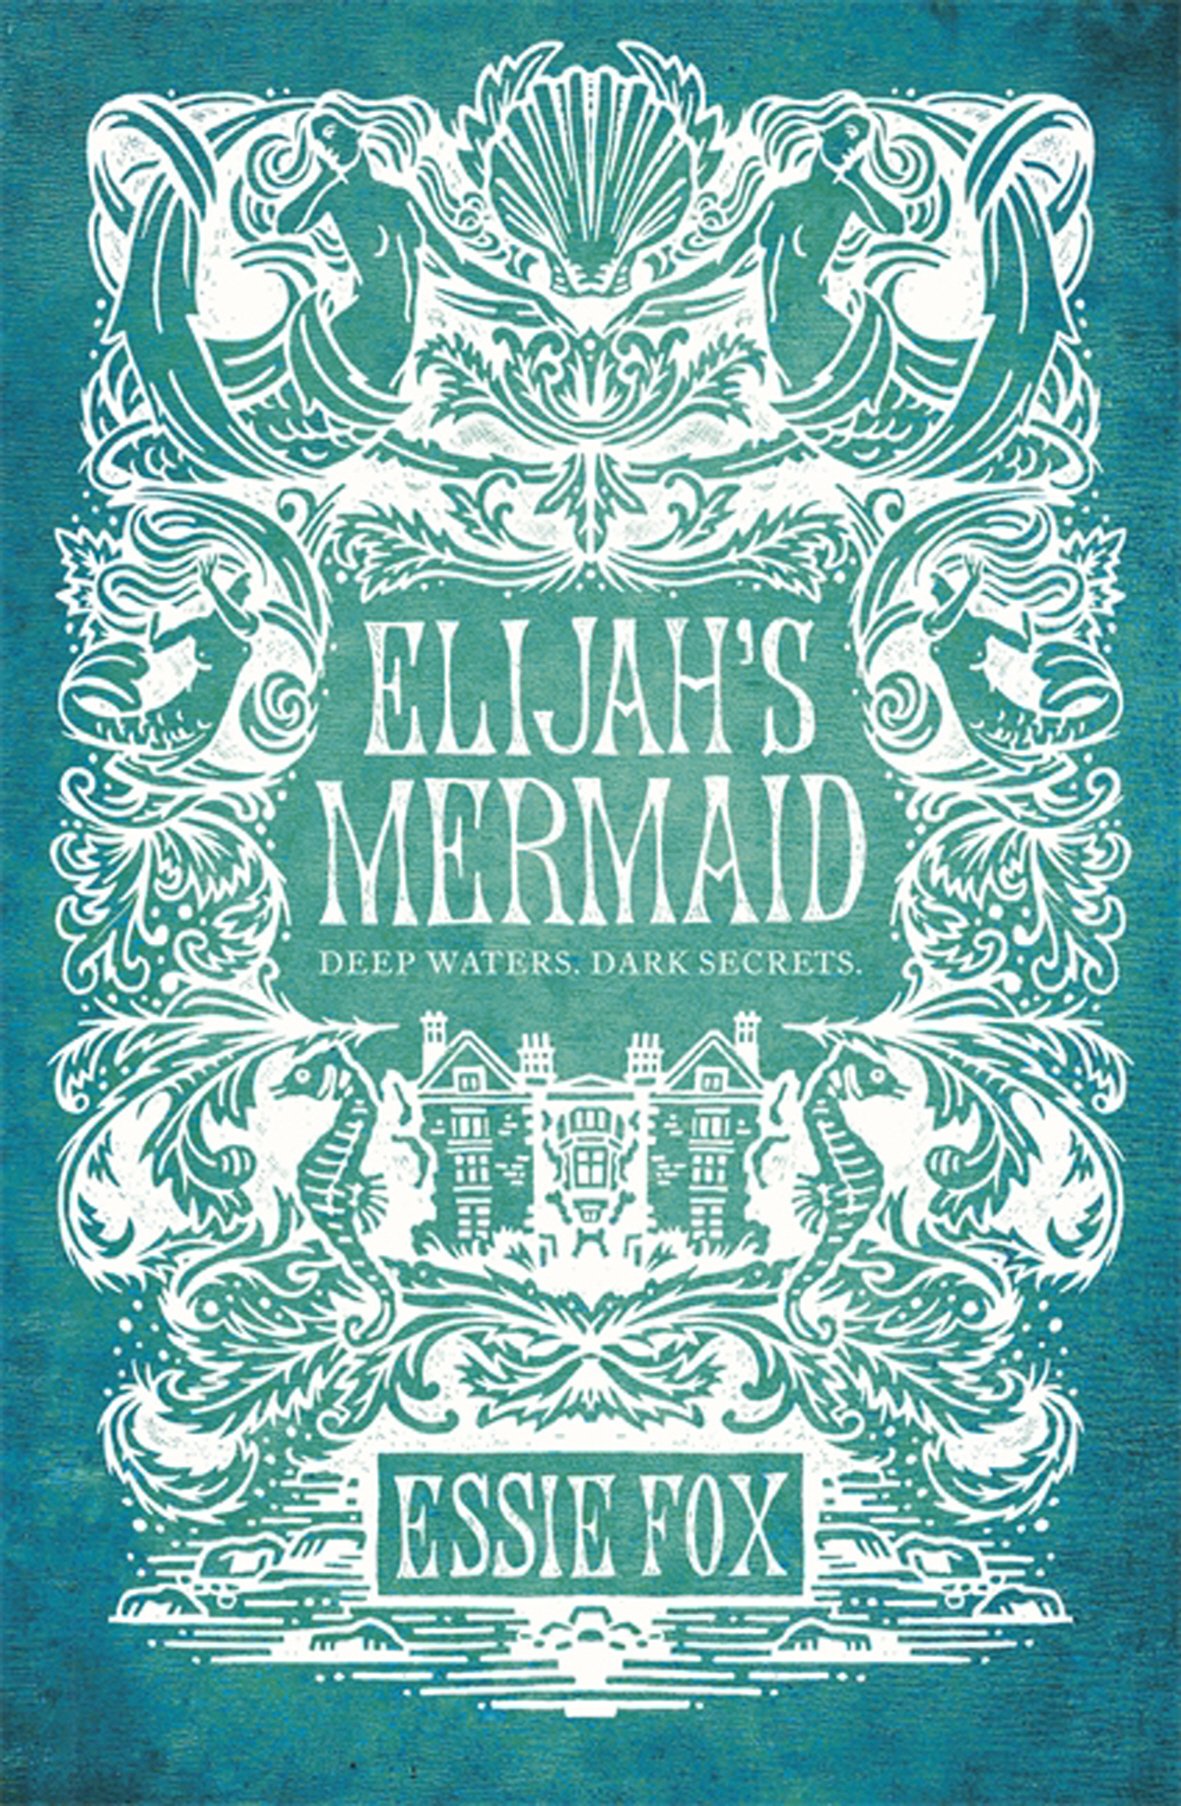 REVIEW: ELIJAH'S MERMAID by Essie Fox